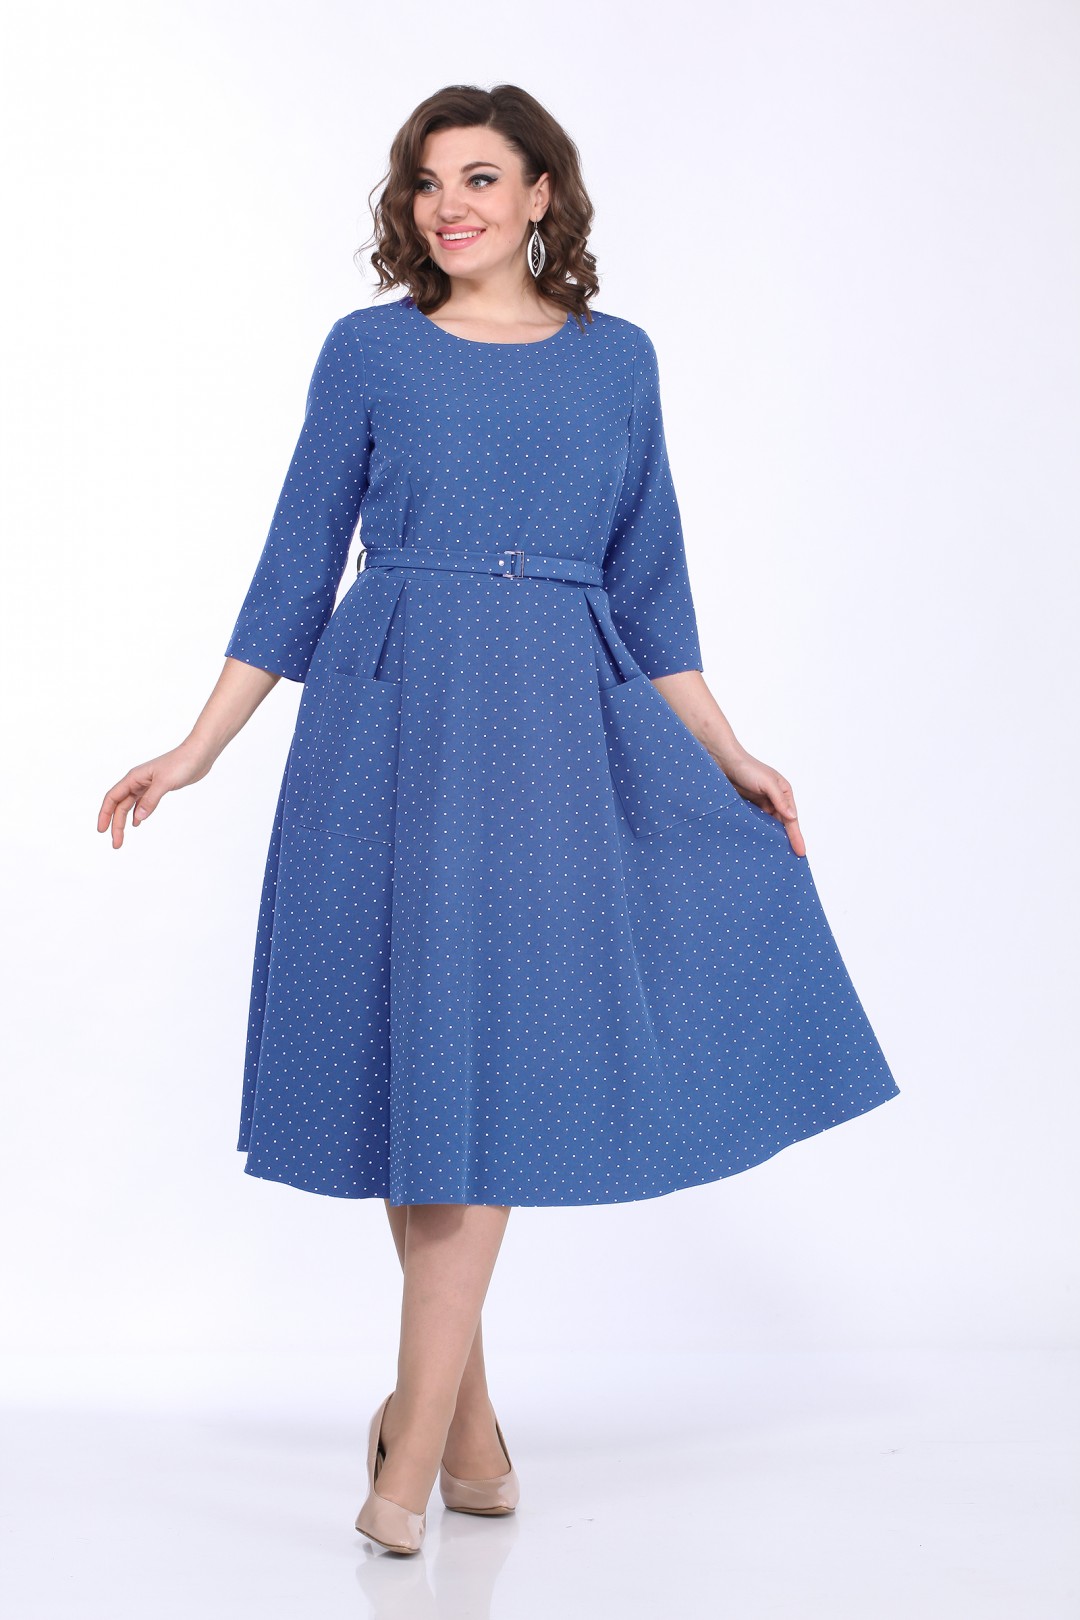 Платье LadyStyleClassic 1270 синий горошек